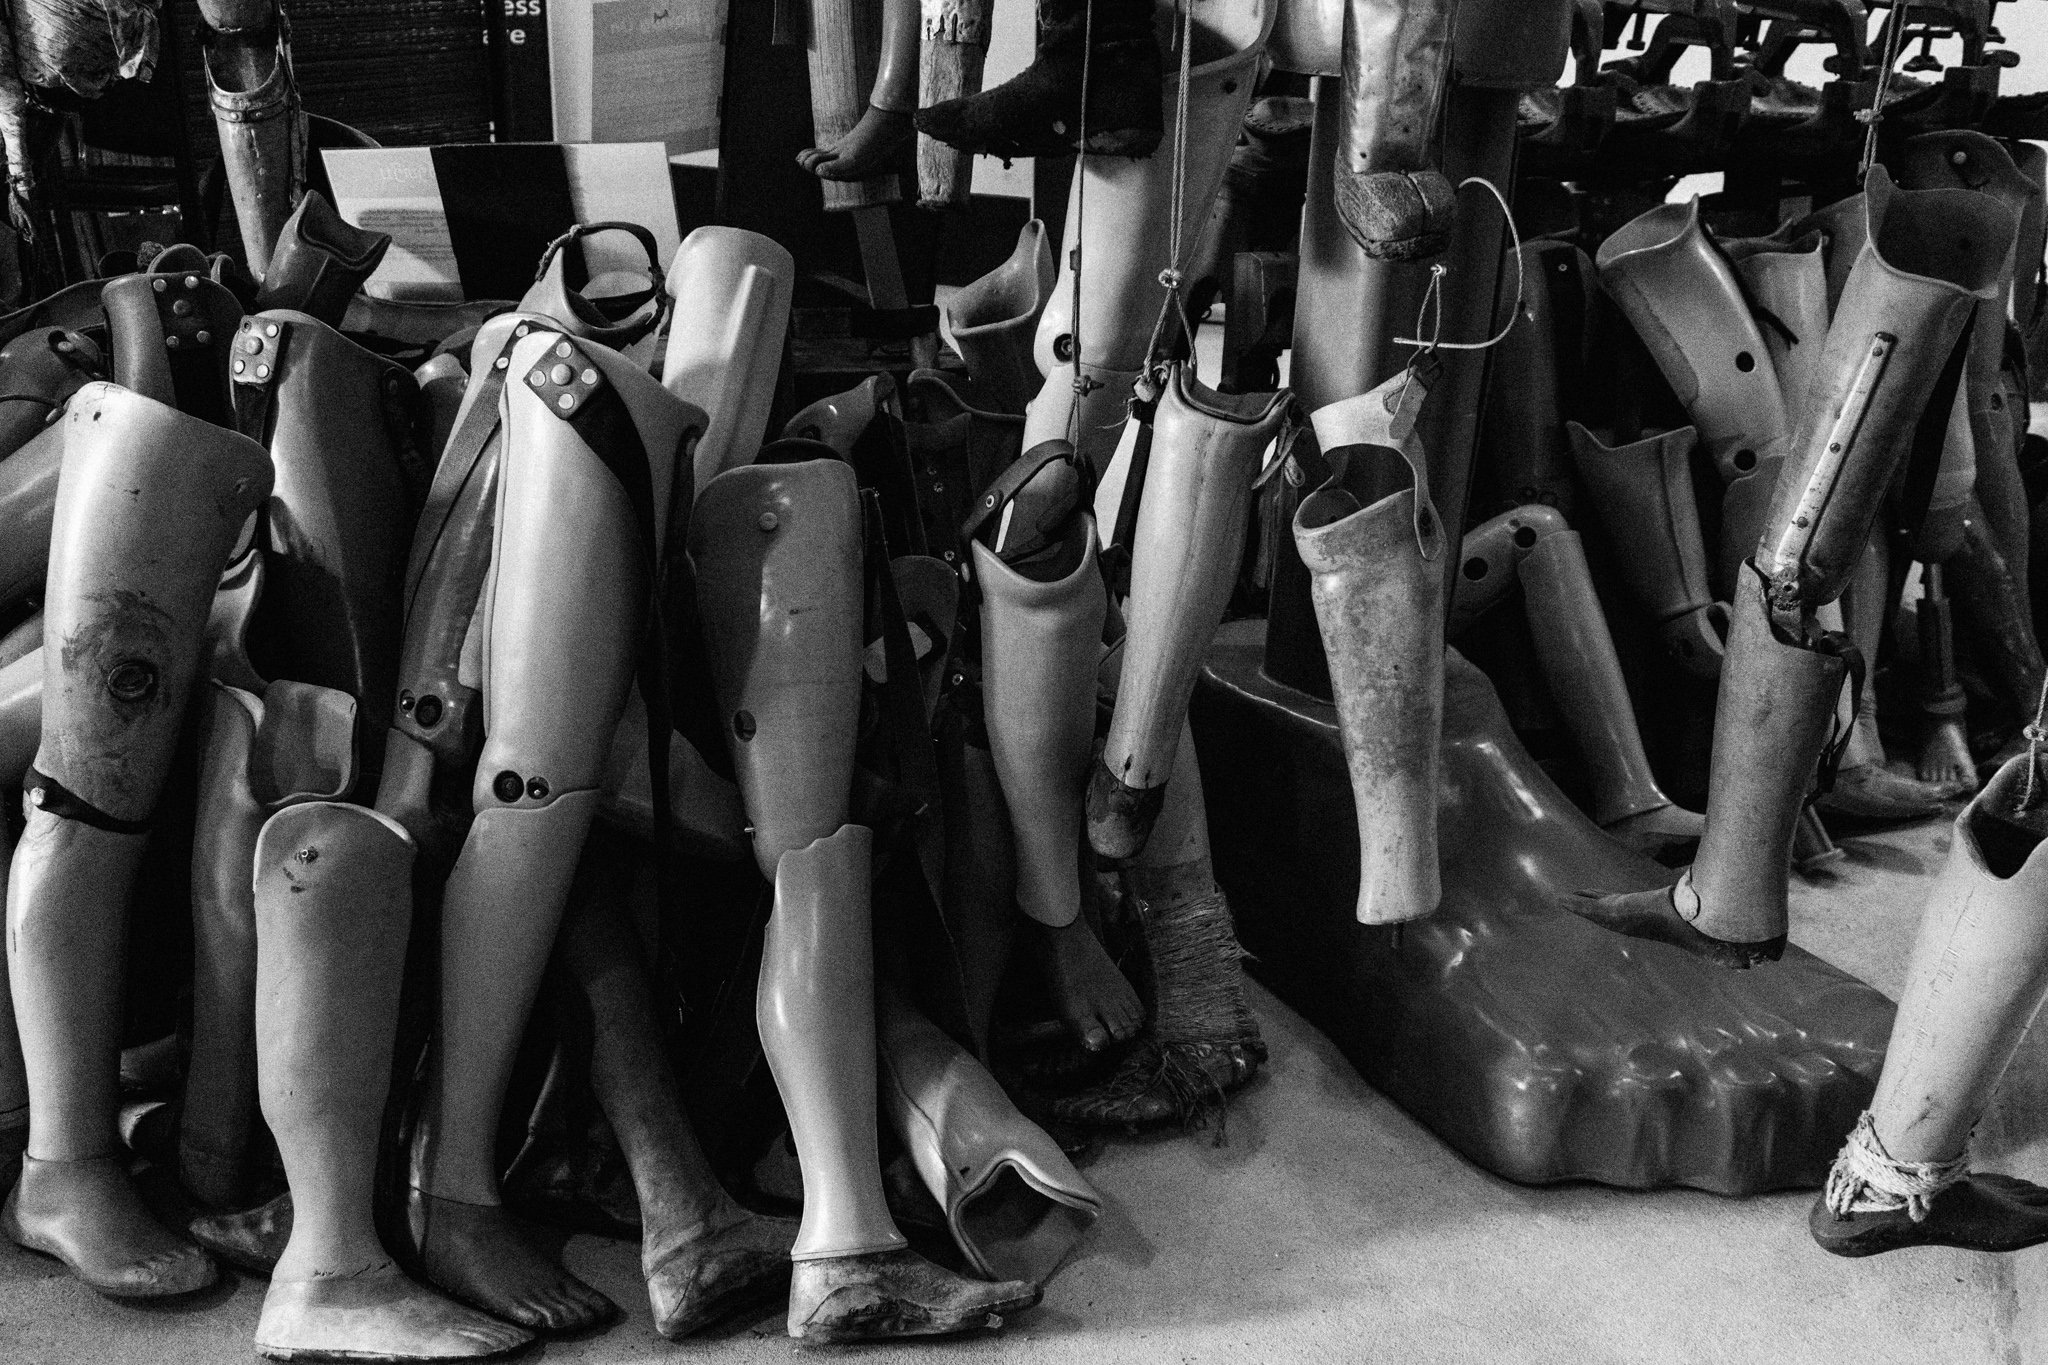 prosthetic legs at the UXO museum in Vientiane, Laos